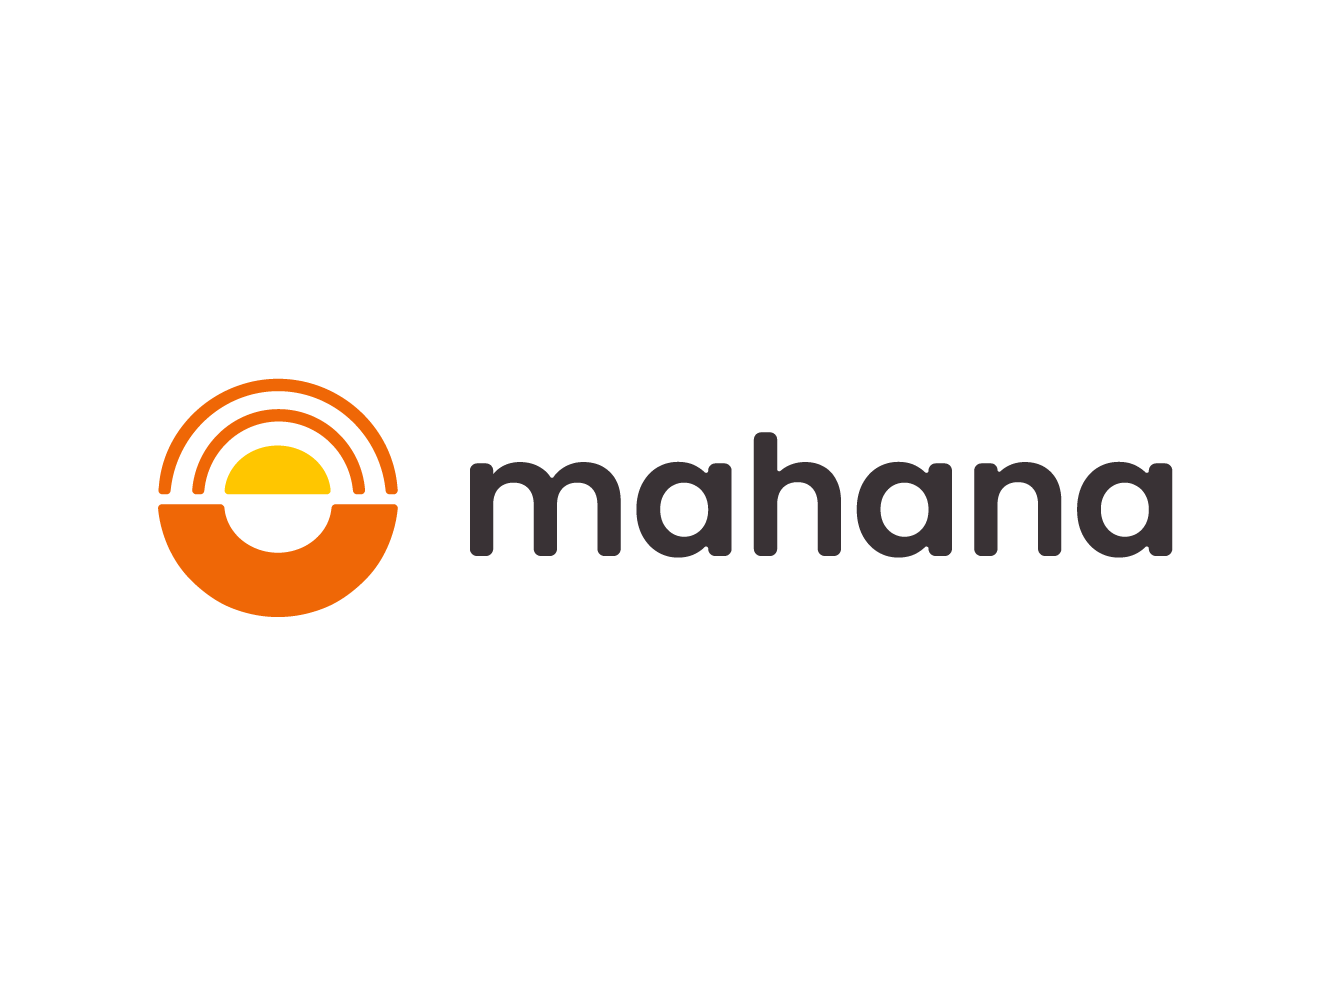 Mahana